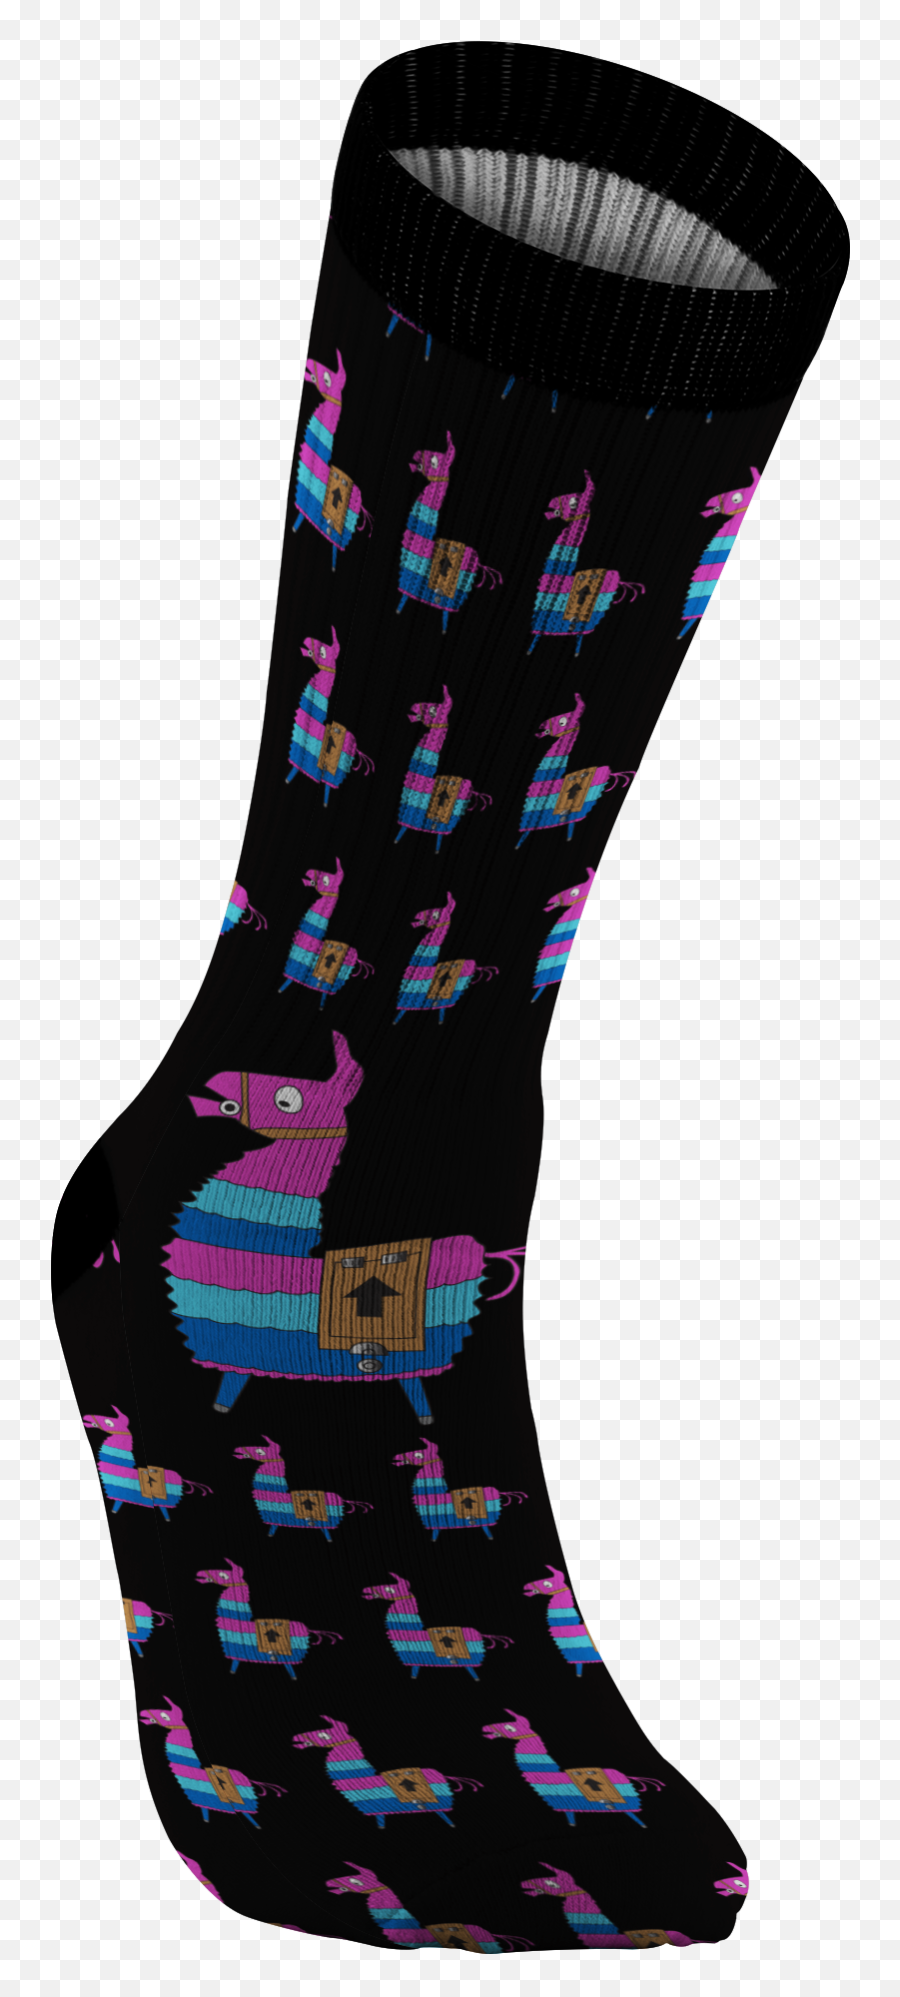 Download Fortnite Loot Llama Socks - Sock Full Size Png Fortnite Sock Png Emoji,Fortnite Llama Png